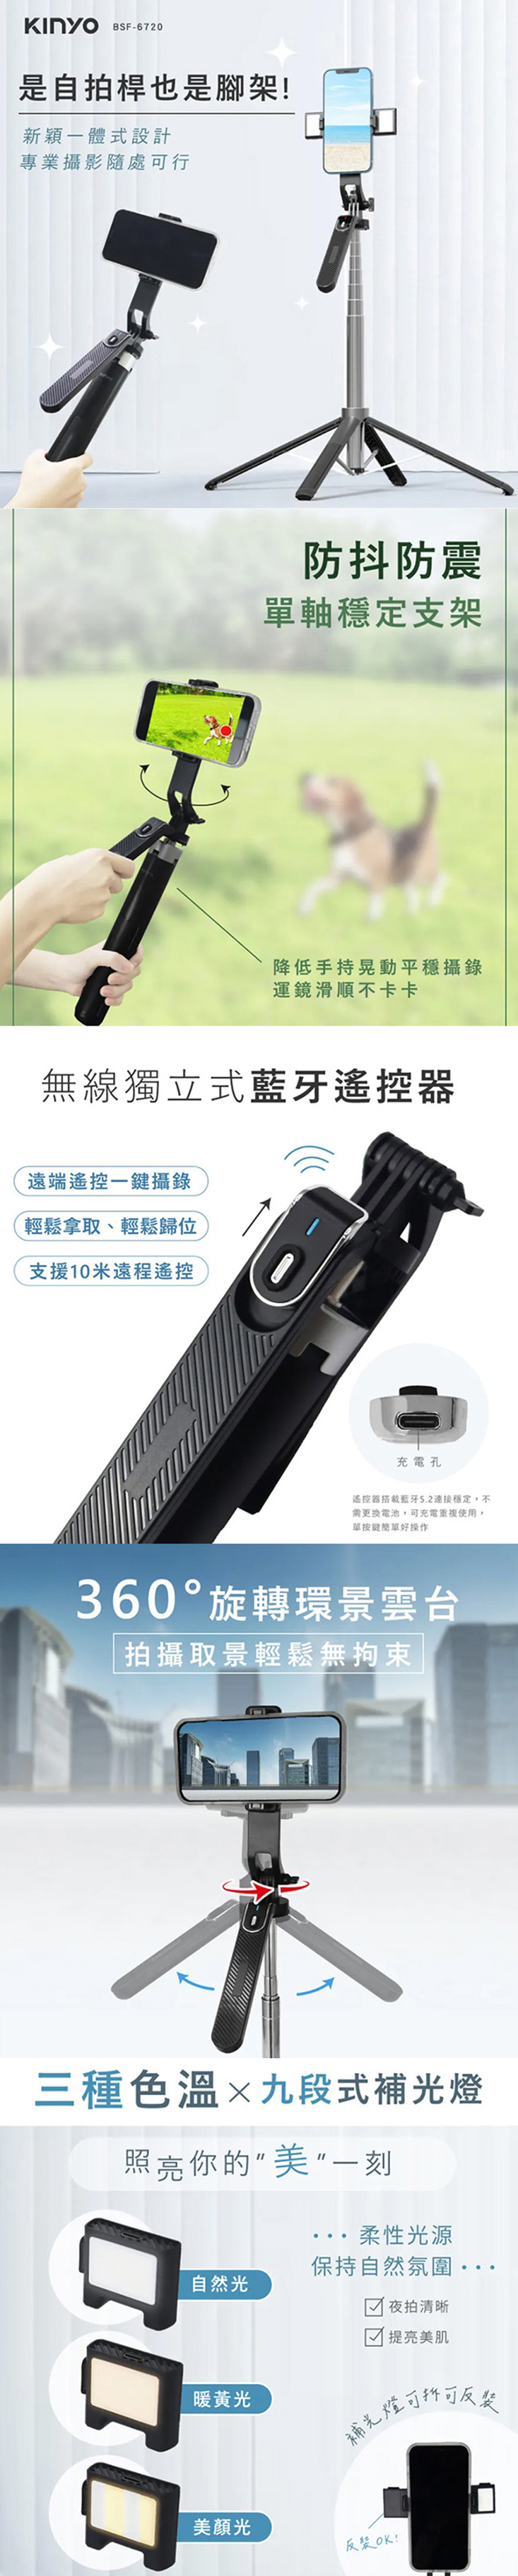 【KINYO】遙控式藍牙手機自拍棒相機腳架(BSF-6720)補光美顏